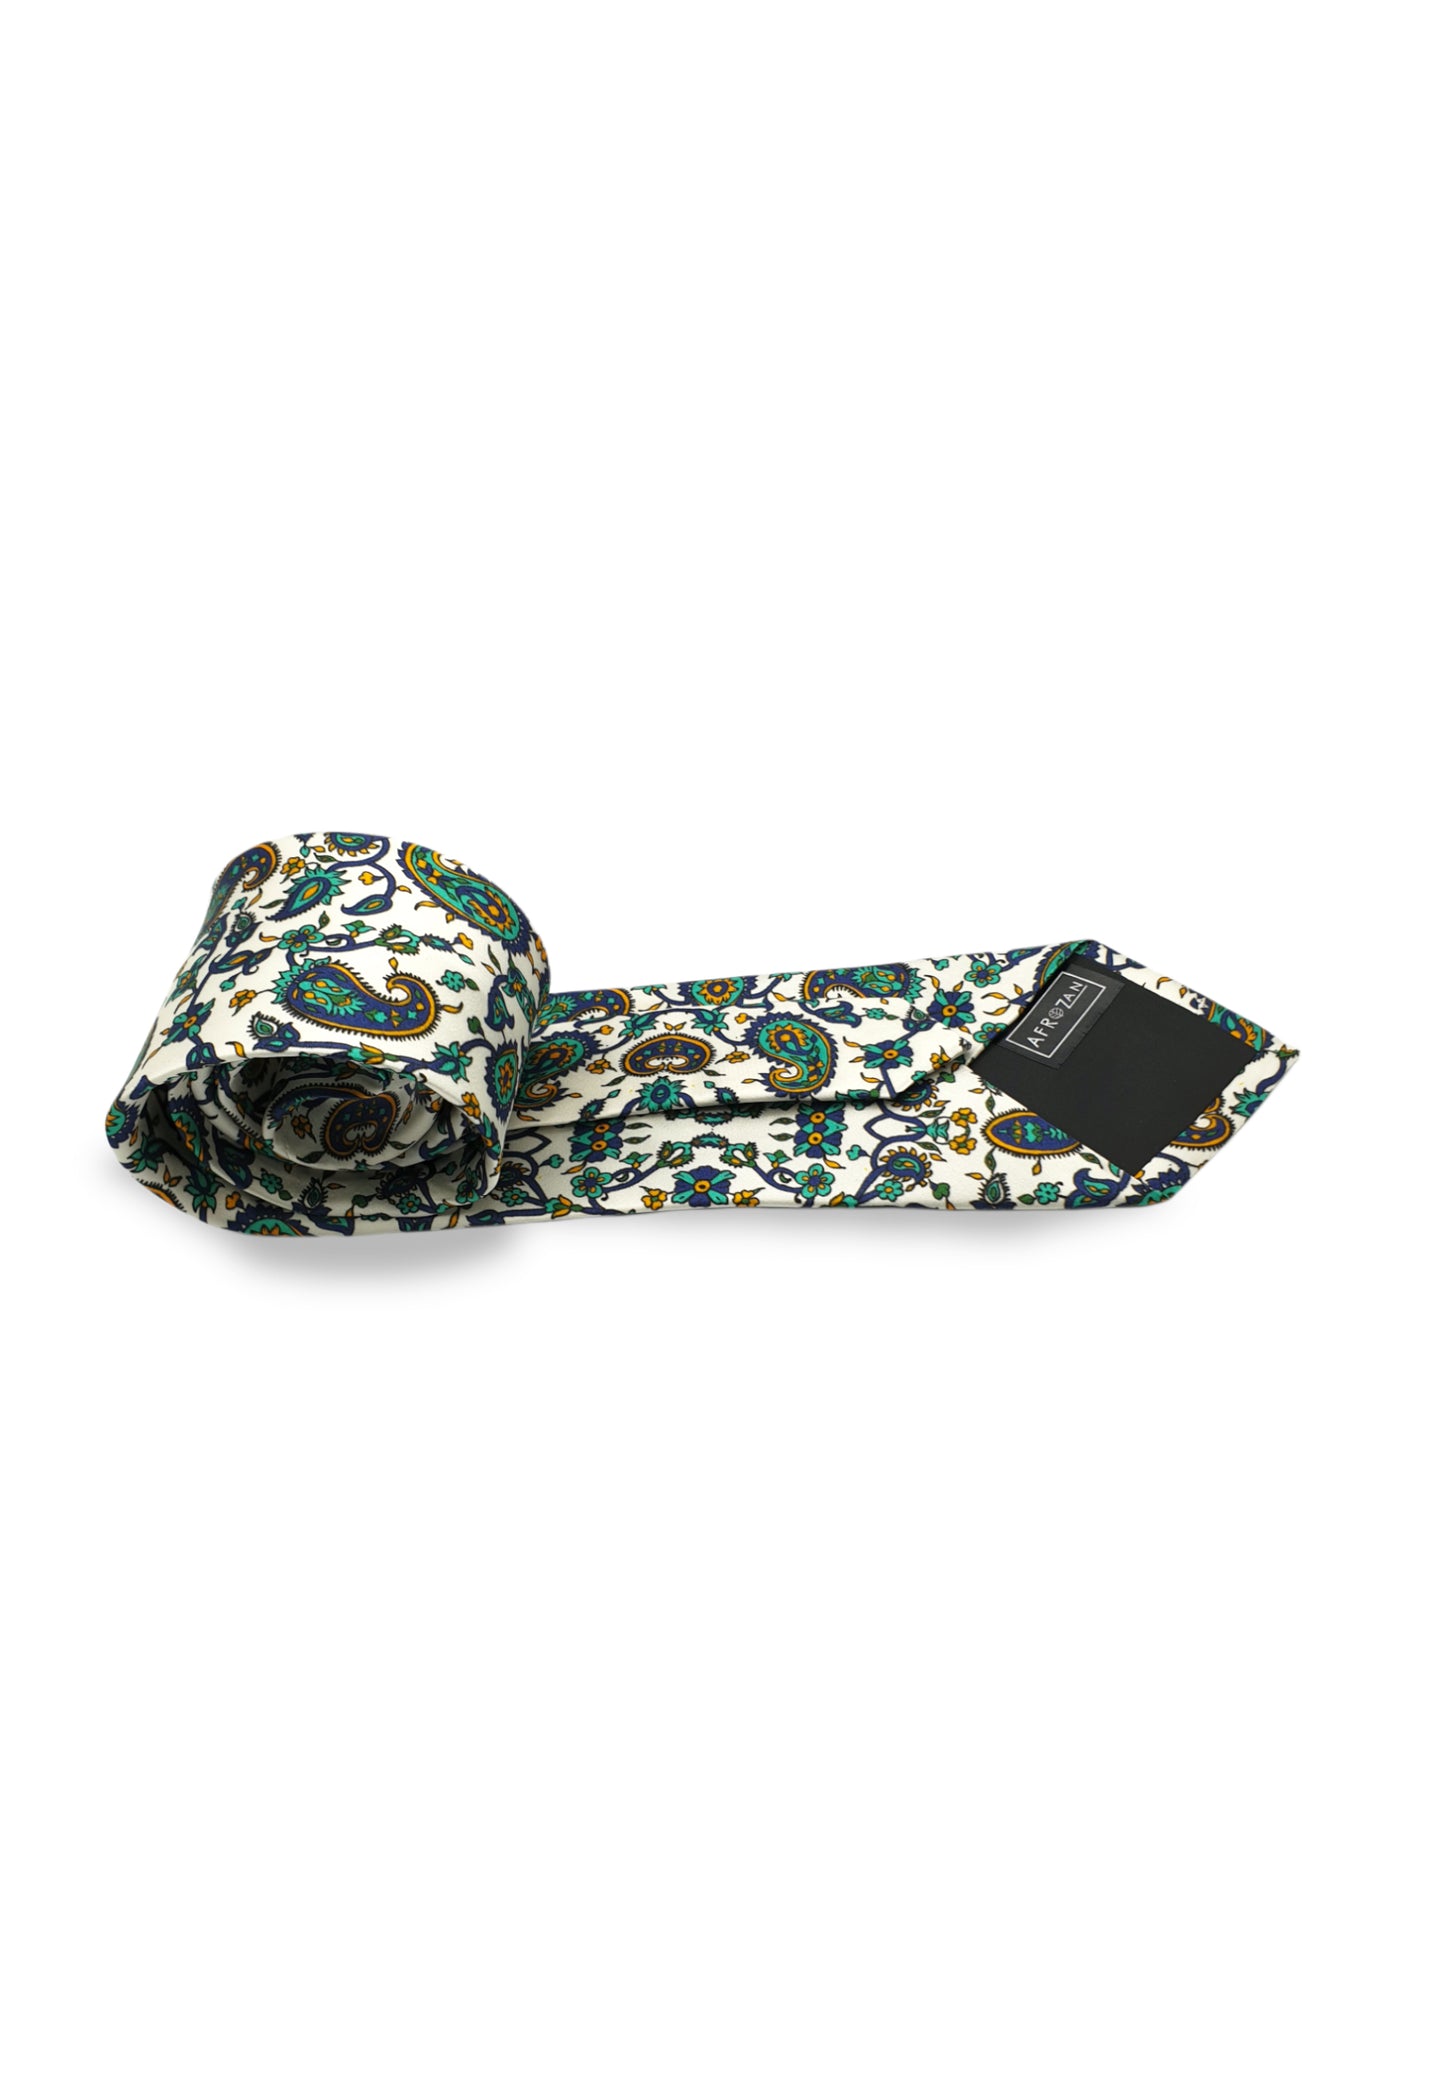 TORANJ- Silk Necktie